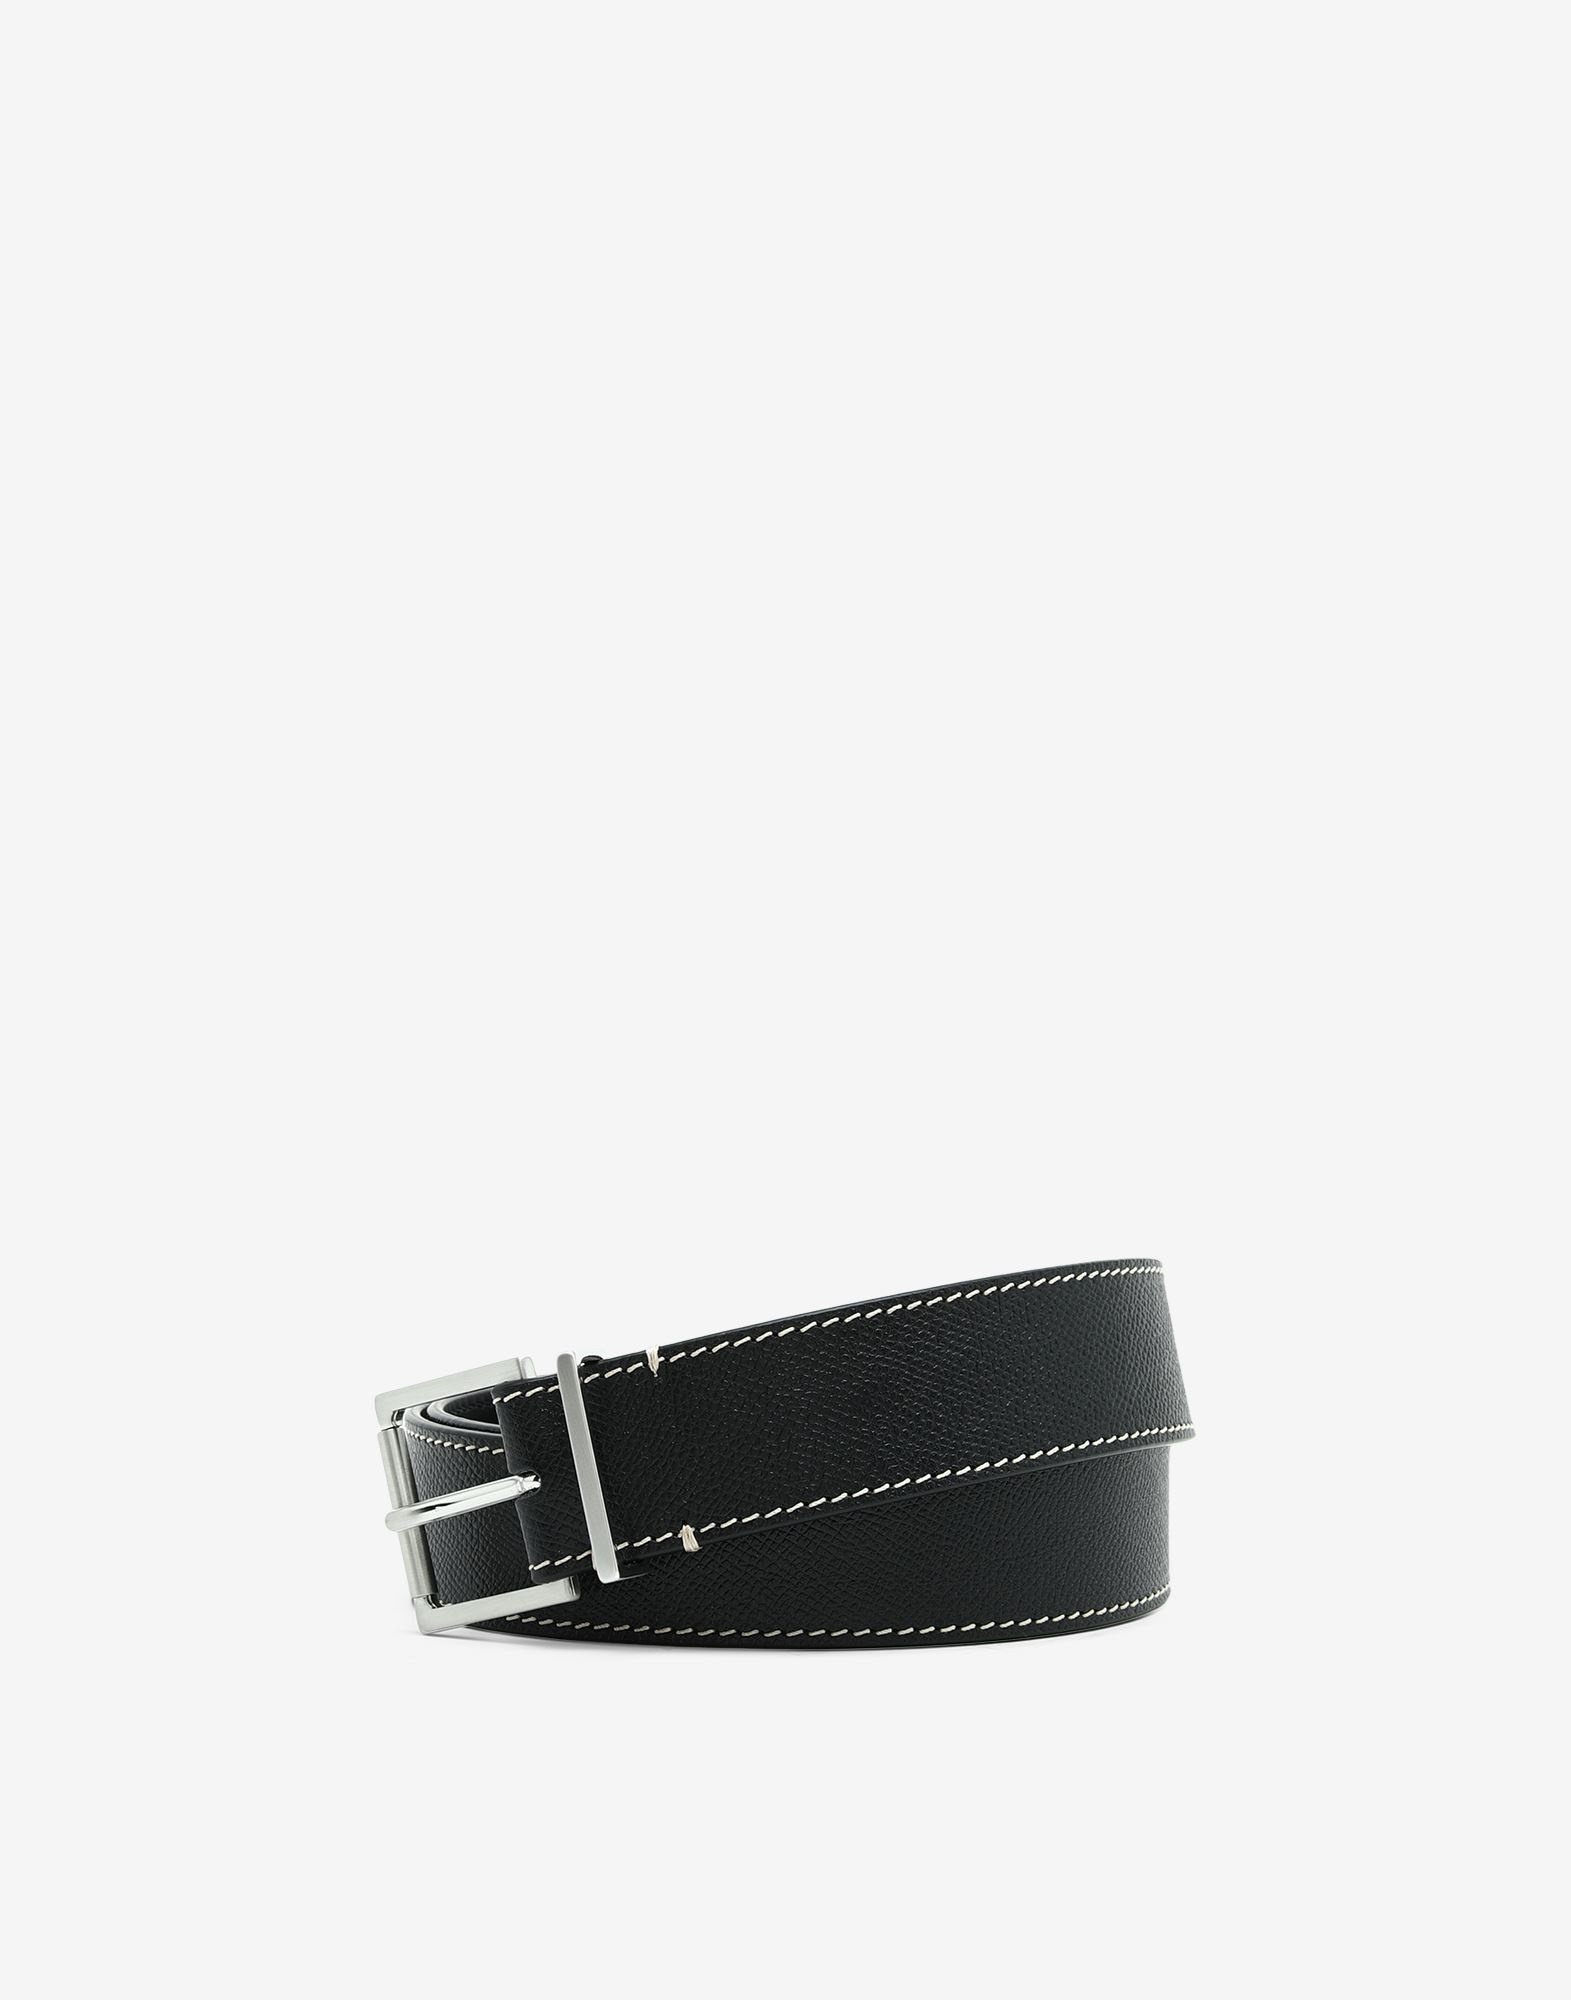 Grainy leather belt - 1